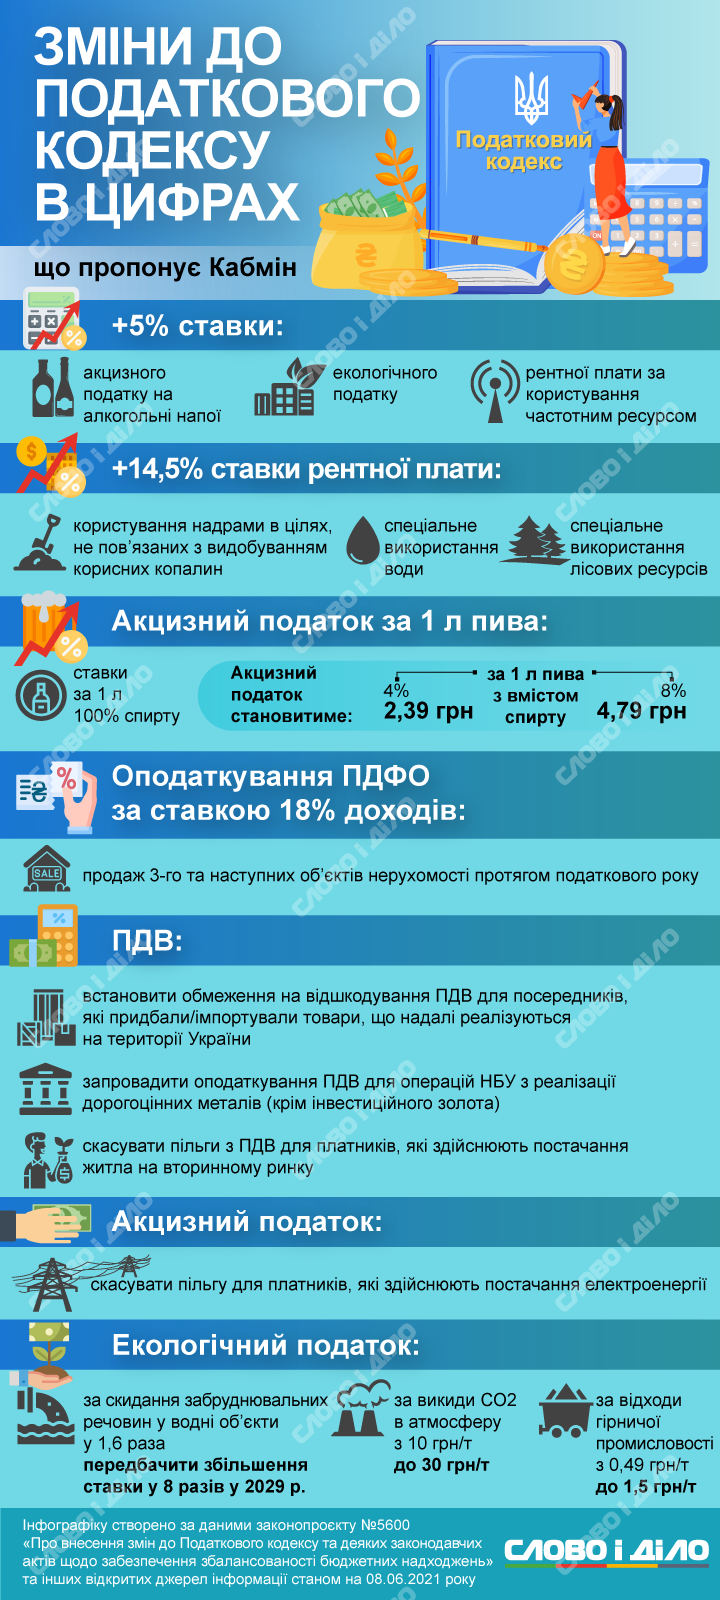 В Україні може зрости екологічний податок, а також ставки акцизного податку на алкоголь. Детальніше про законопроєкт – на інфографіці.